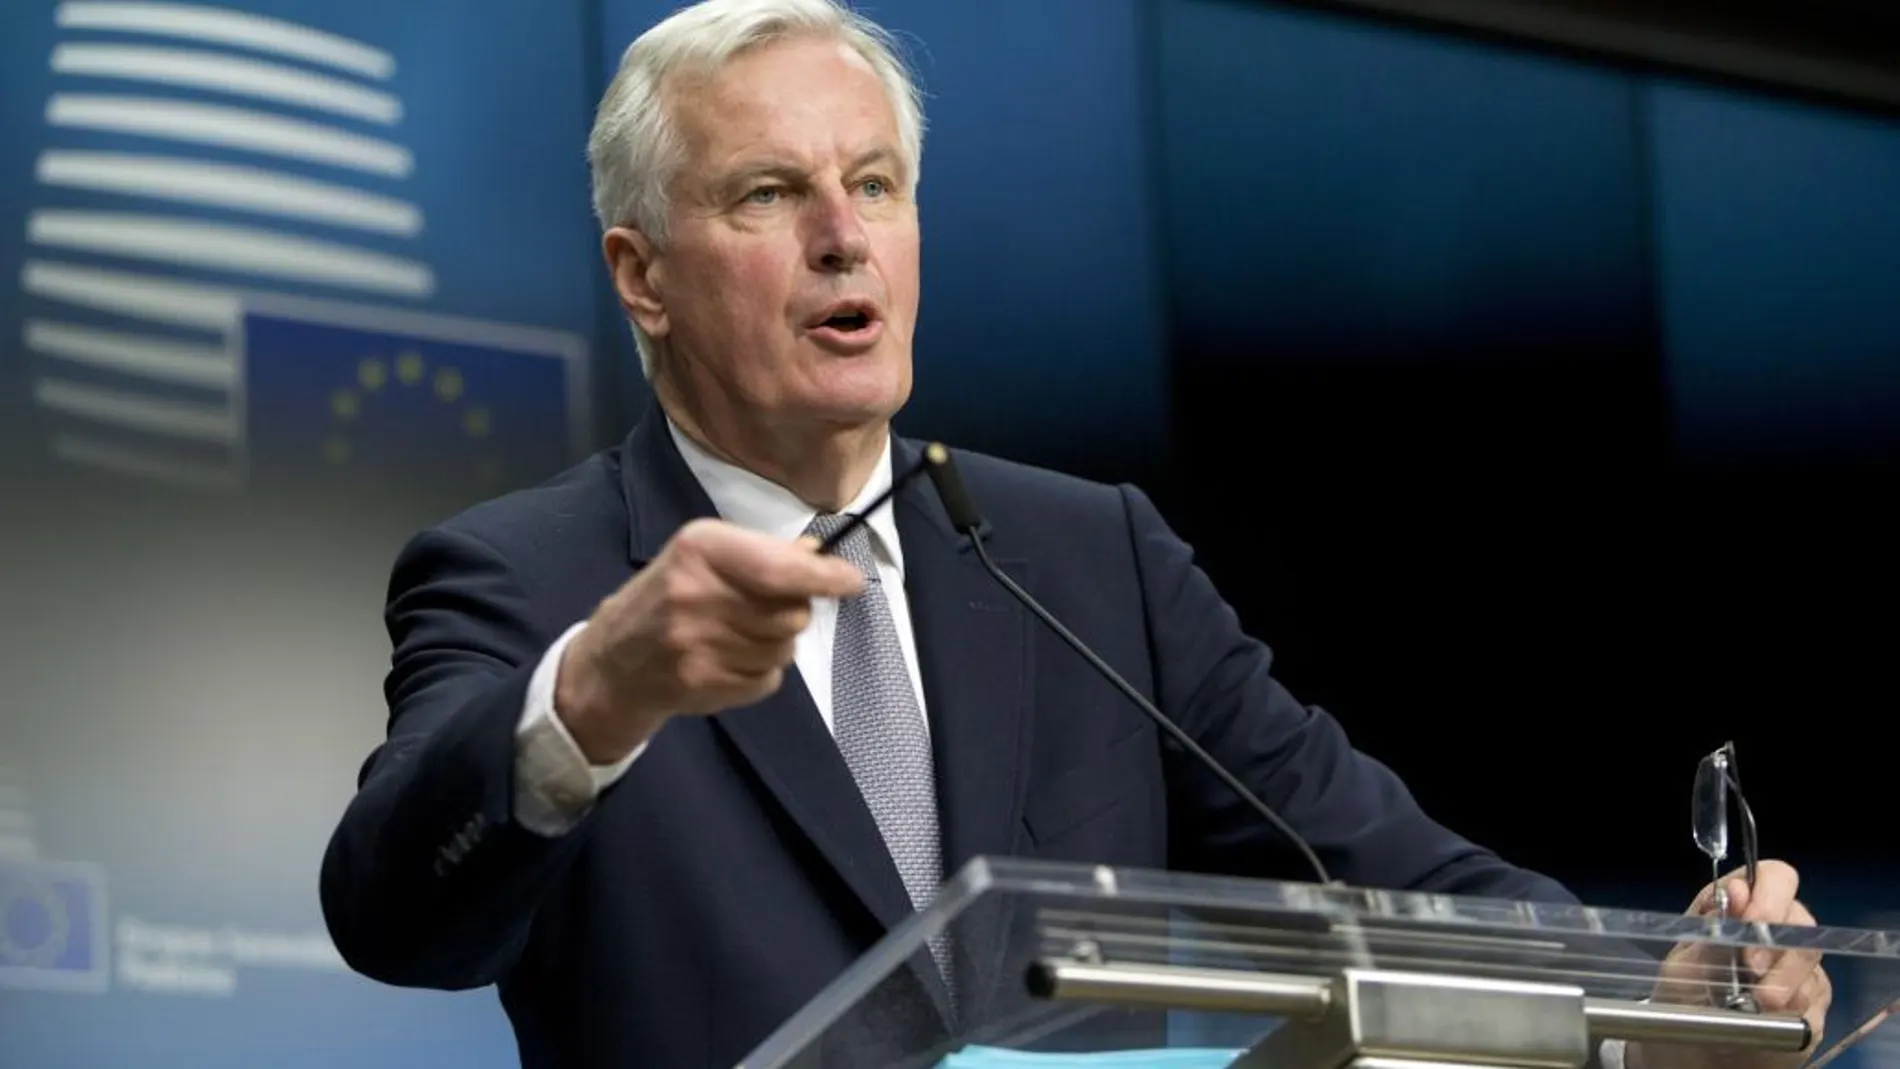 El negociador europeo para el "brexit", Michel Barnier, ofrece una rueda de prensa tras la reunión del Consejo de Asuntos Generales de la Unión Europea celebrado en el Consejo Europeo en Bruselas